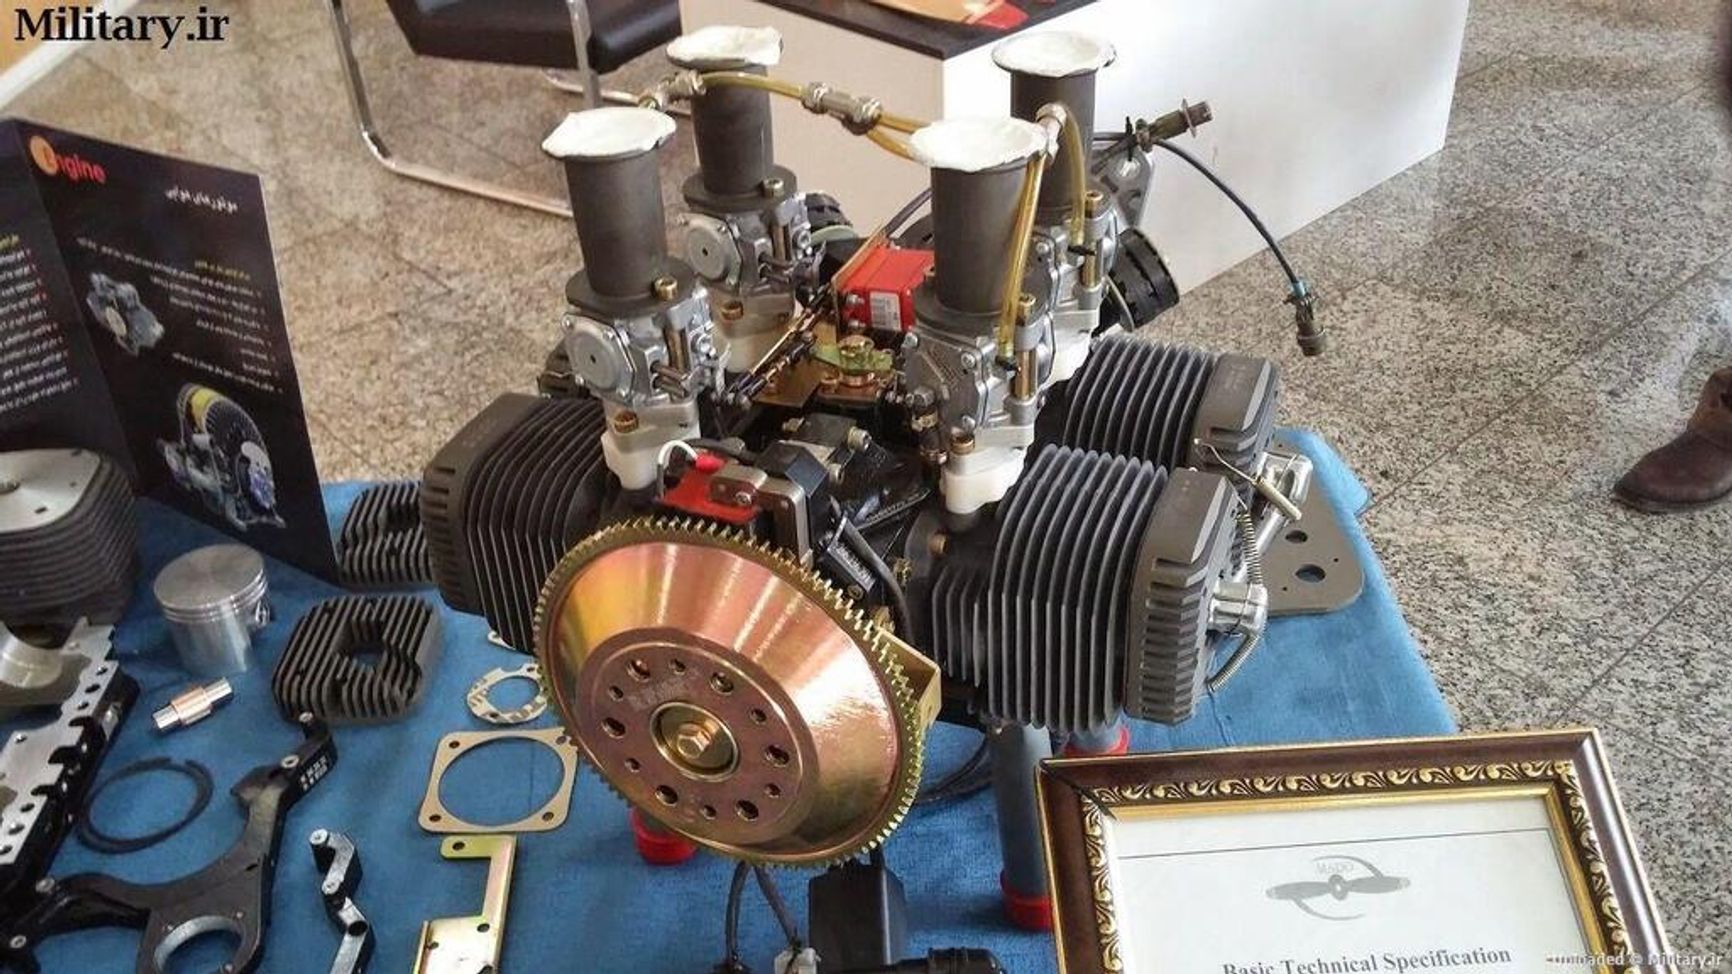 Двигатель БПЛА иранского производства на выставке в Иране в октябре 2014 года